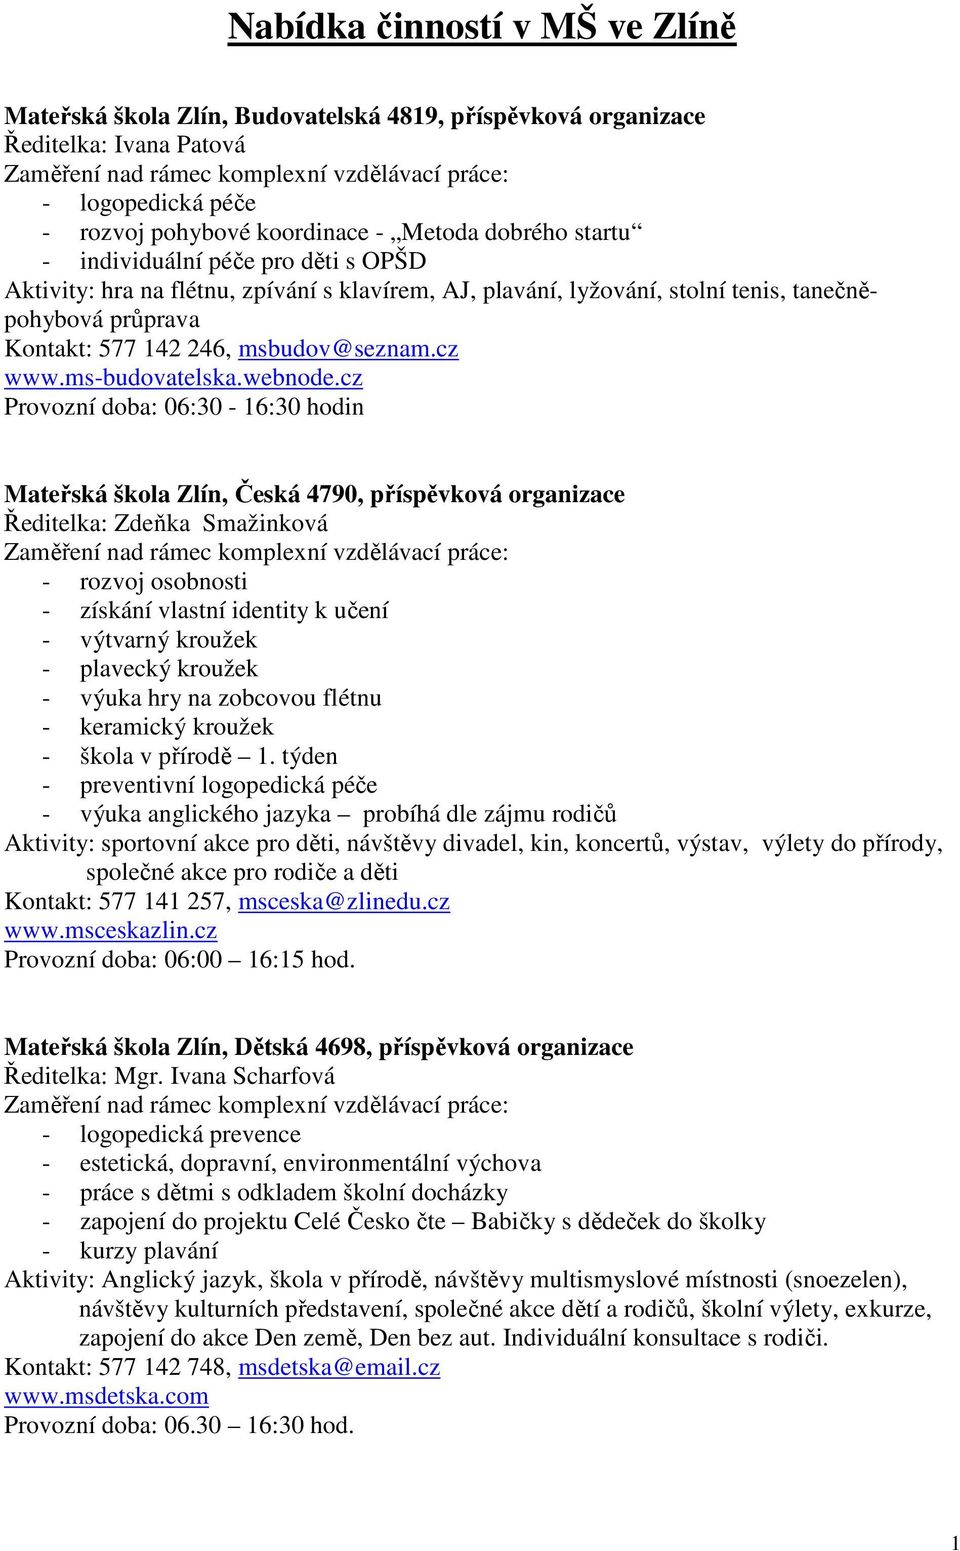 Nabídka činností v MŠ ve Zlíně - PDF Stažení zdarma